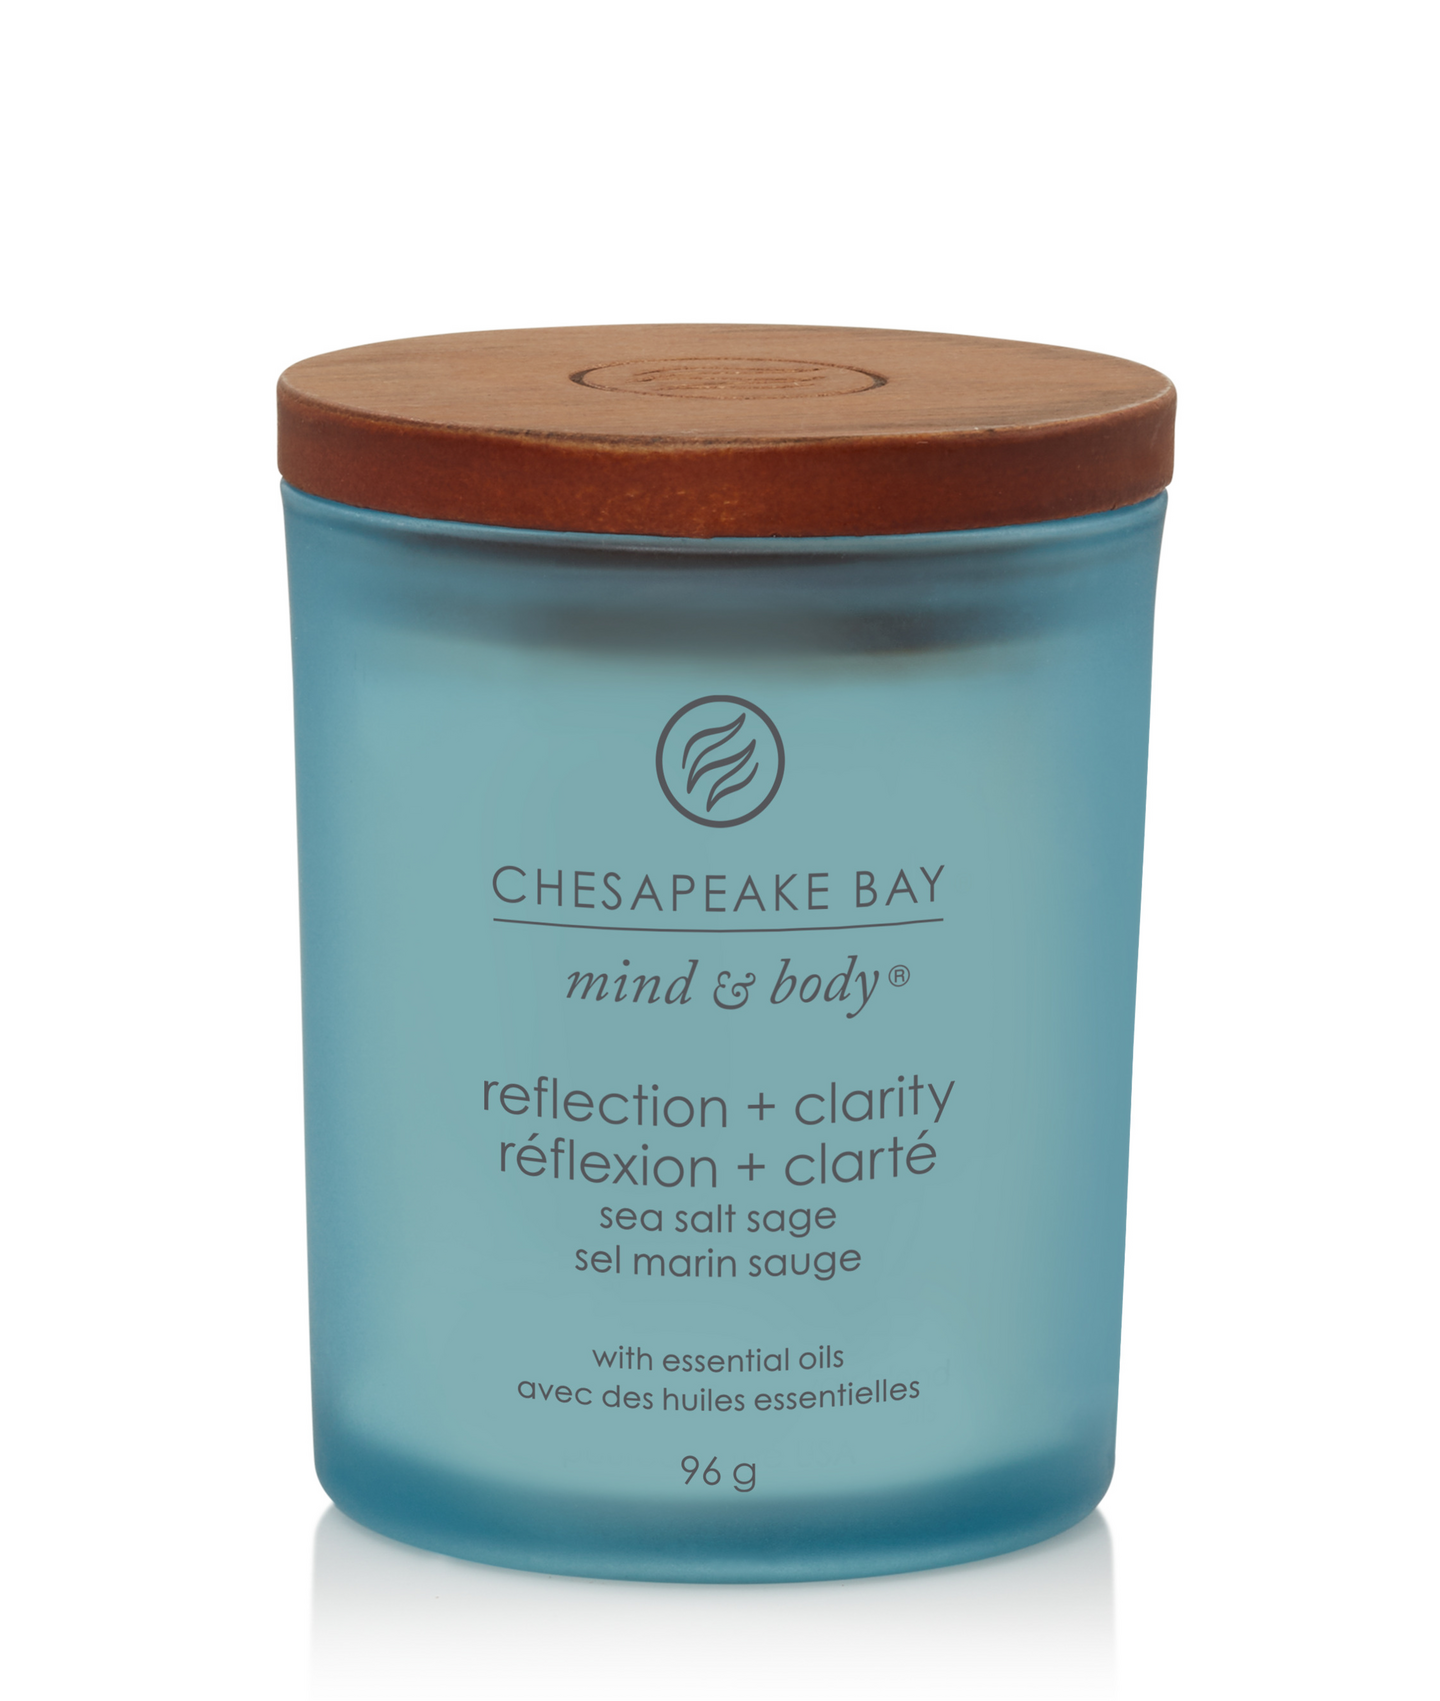 Chesapeake Bay Reflection+Clarity tuoksukynttilä 96g sea salt sage